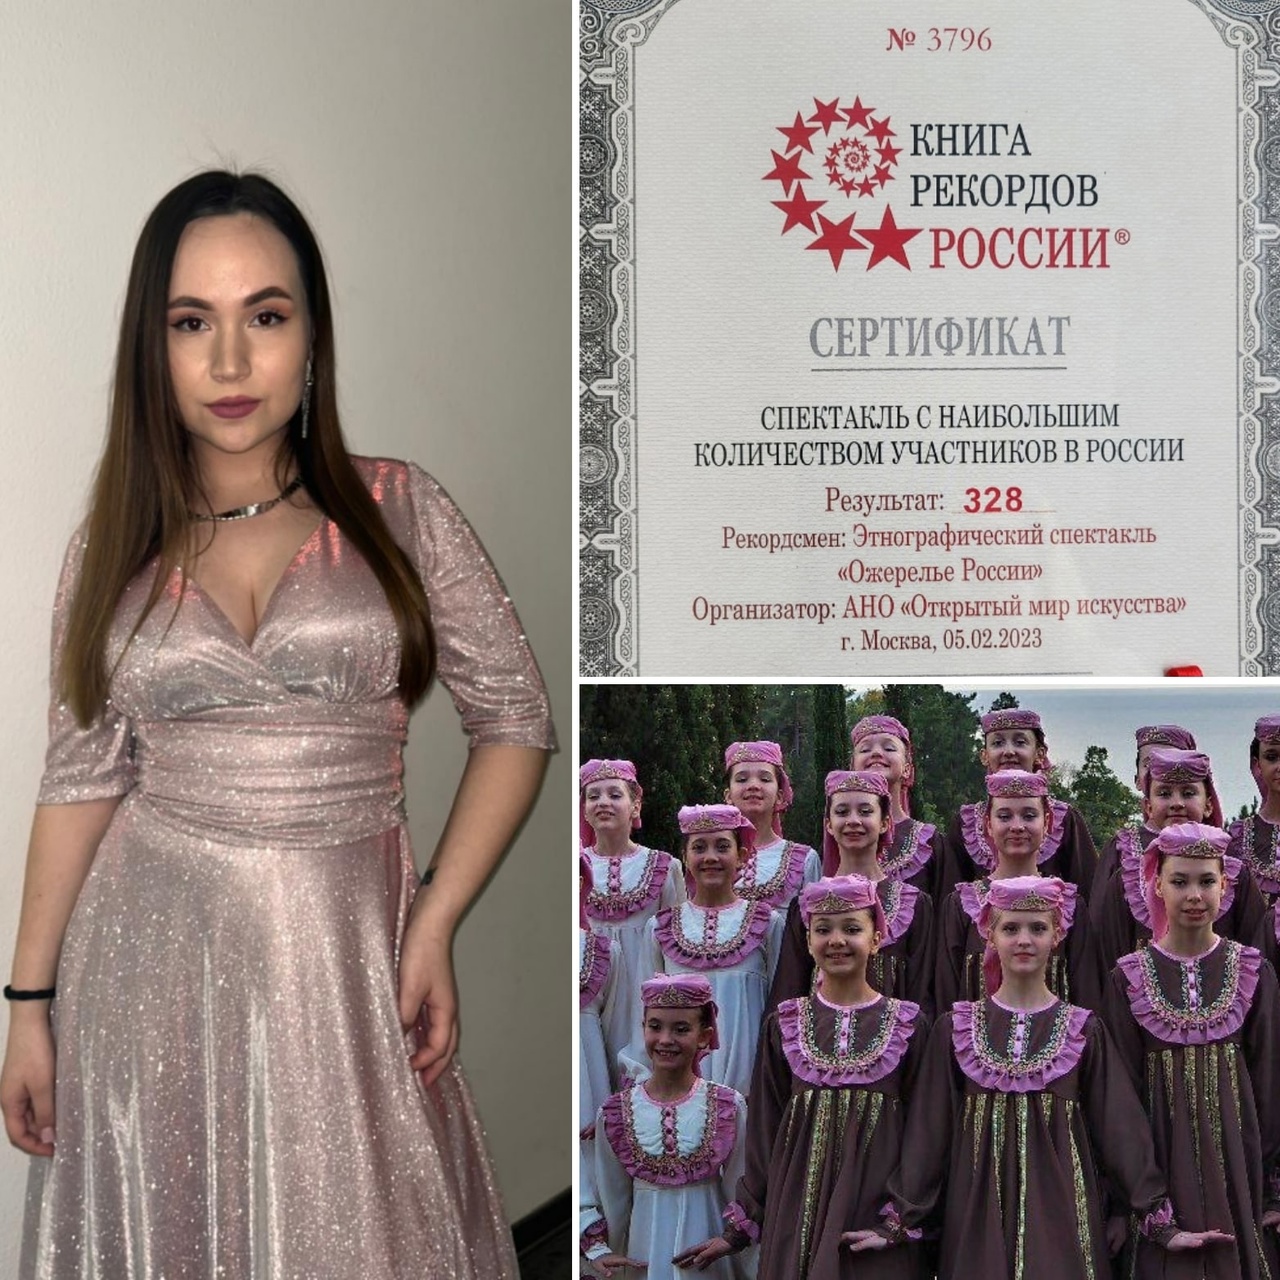 Яна Габбасова выступила в грандиозном музыкально-этнографическом действе, вошедшем в Книгу Рекордов России.